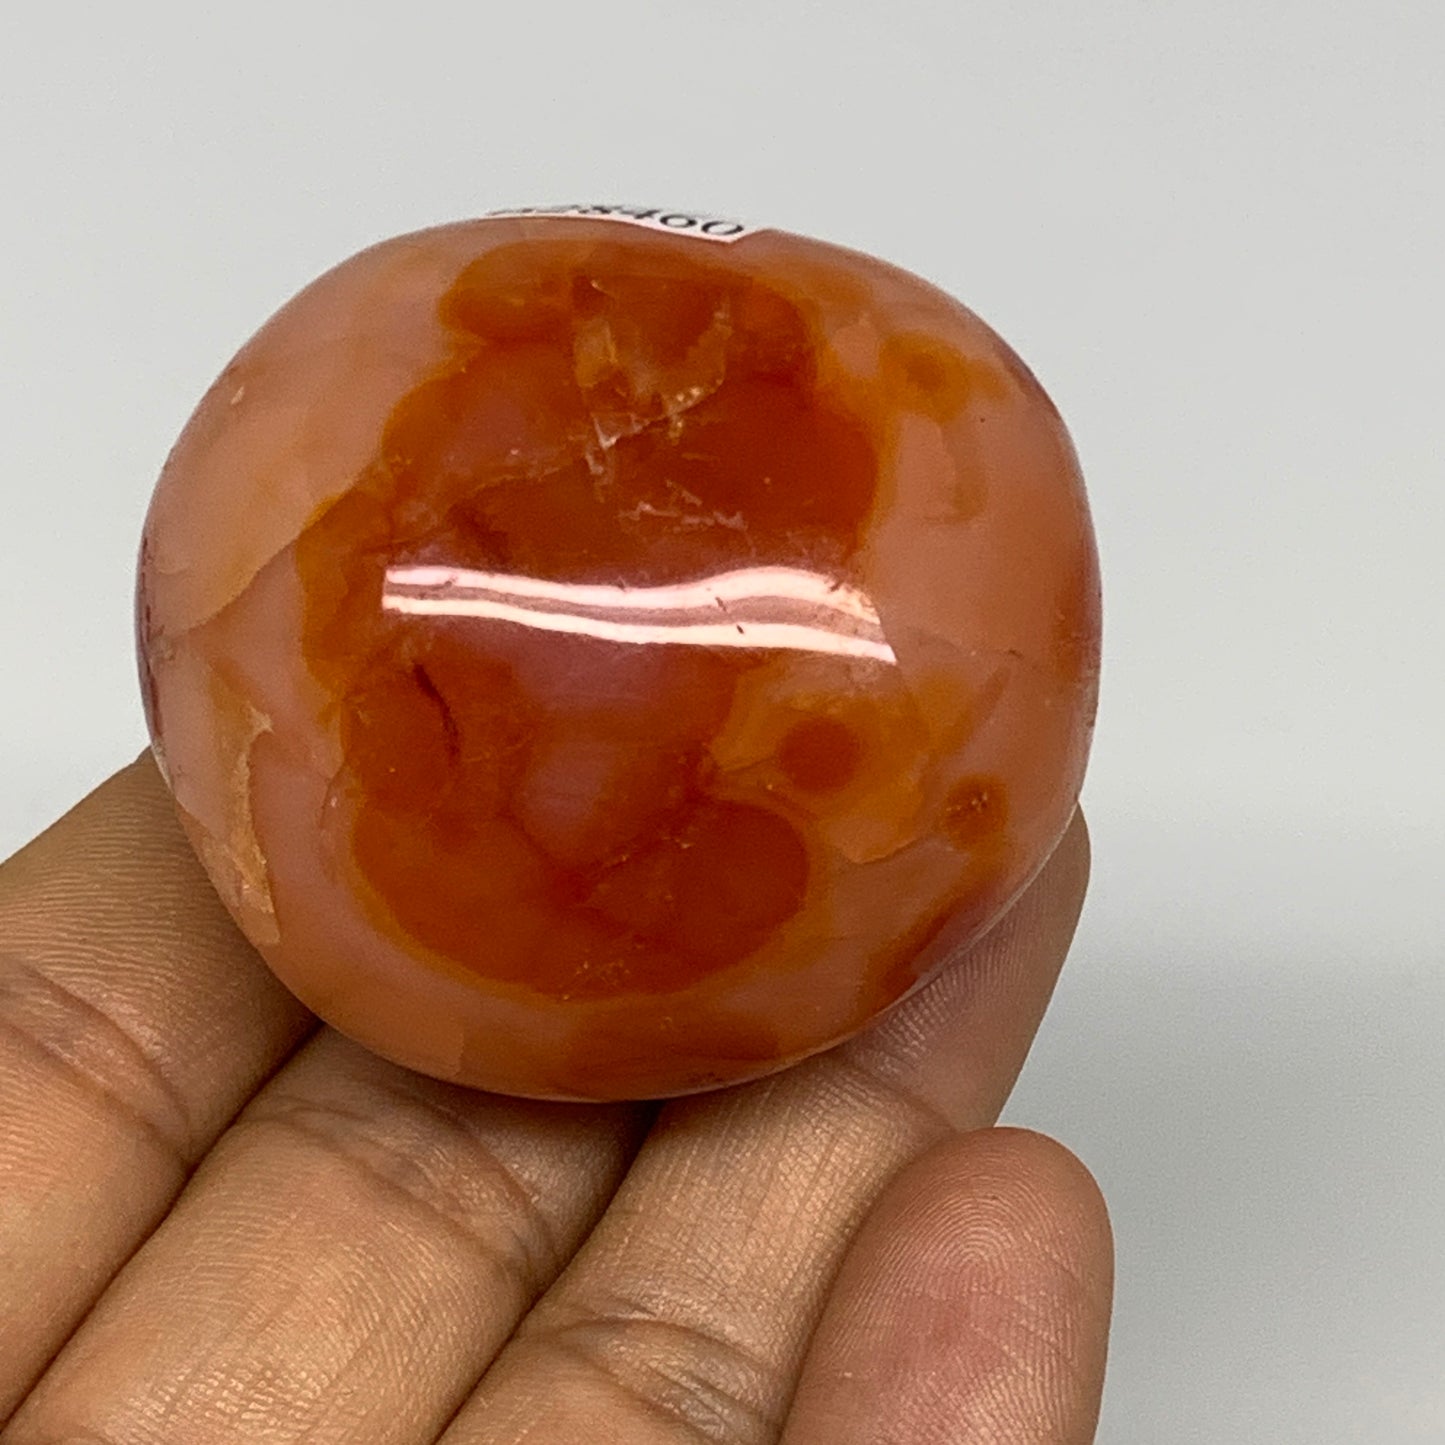 96.9g, 1.9"x1.7"x1.3", Red Carnelian Palm-Stone Gem Crystal Polished, B28460